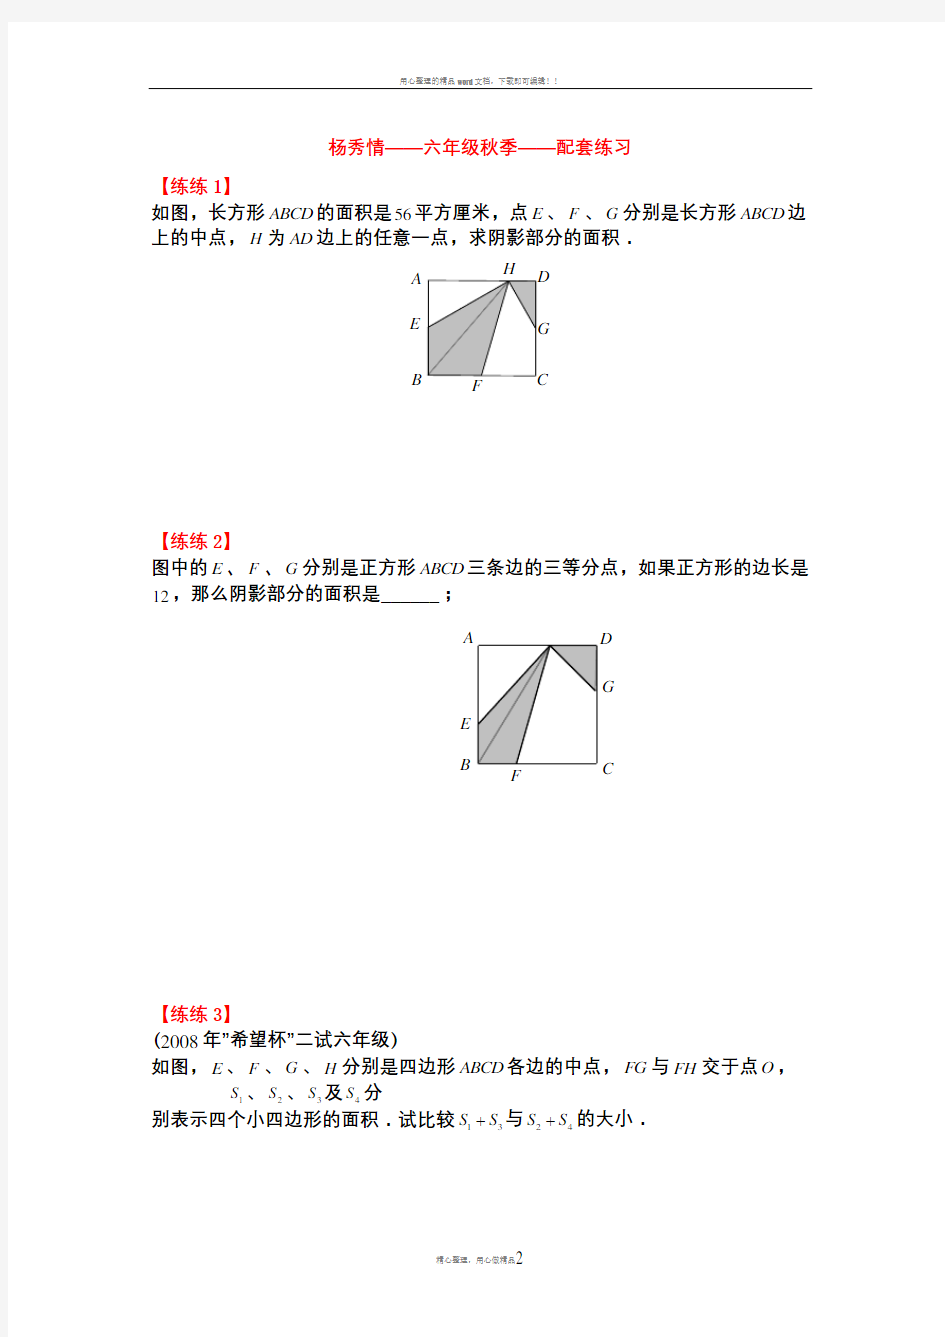 五大模型(三角型等积变形、共角模型